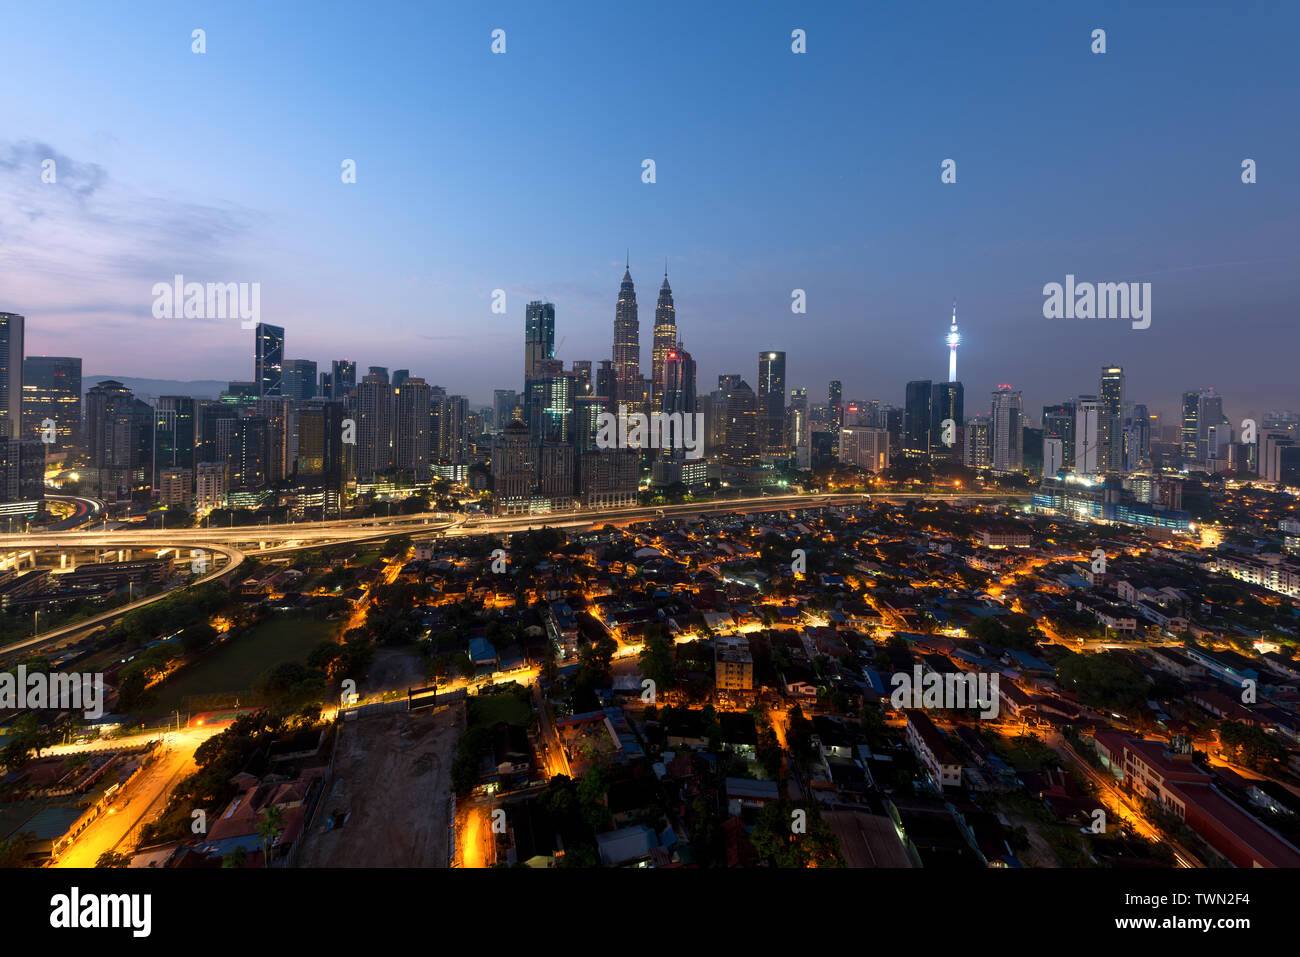 La ville de Kuala Lumpur. Vue panoramique sur les toits de la ville de Kuala Lumpur au lever du soleil, la vue des gratte-ciel en construction en Malaisie. Banque D'Images